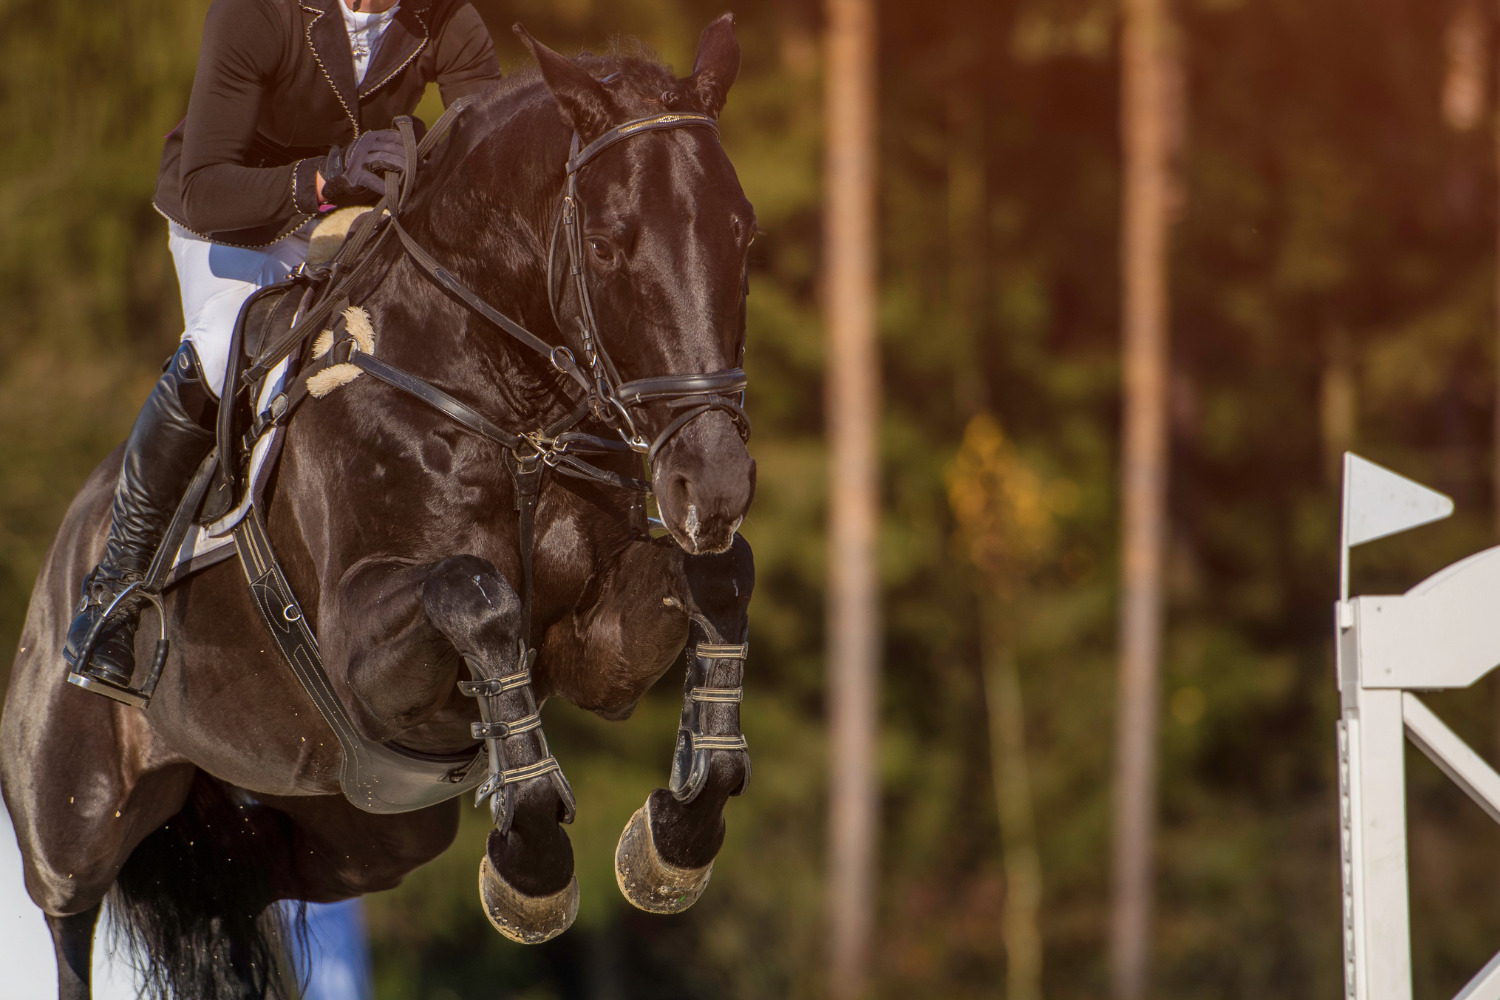 乗馬用品店レクシア | 高所得者層の習い事に乗馬をおすすめする9つの理由